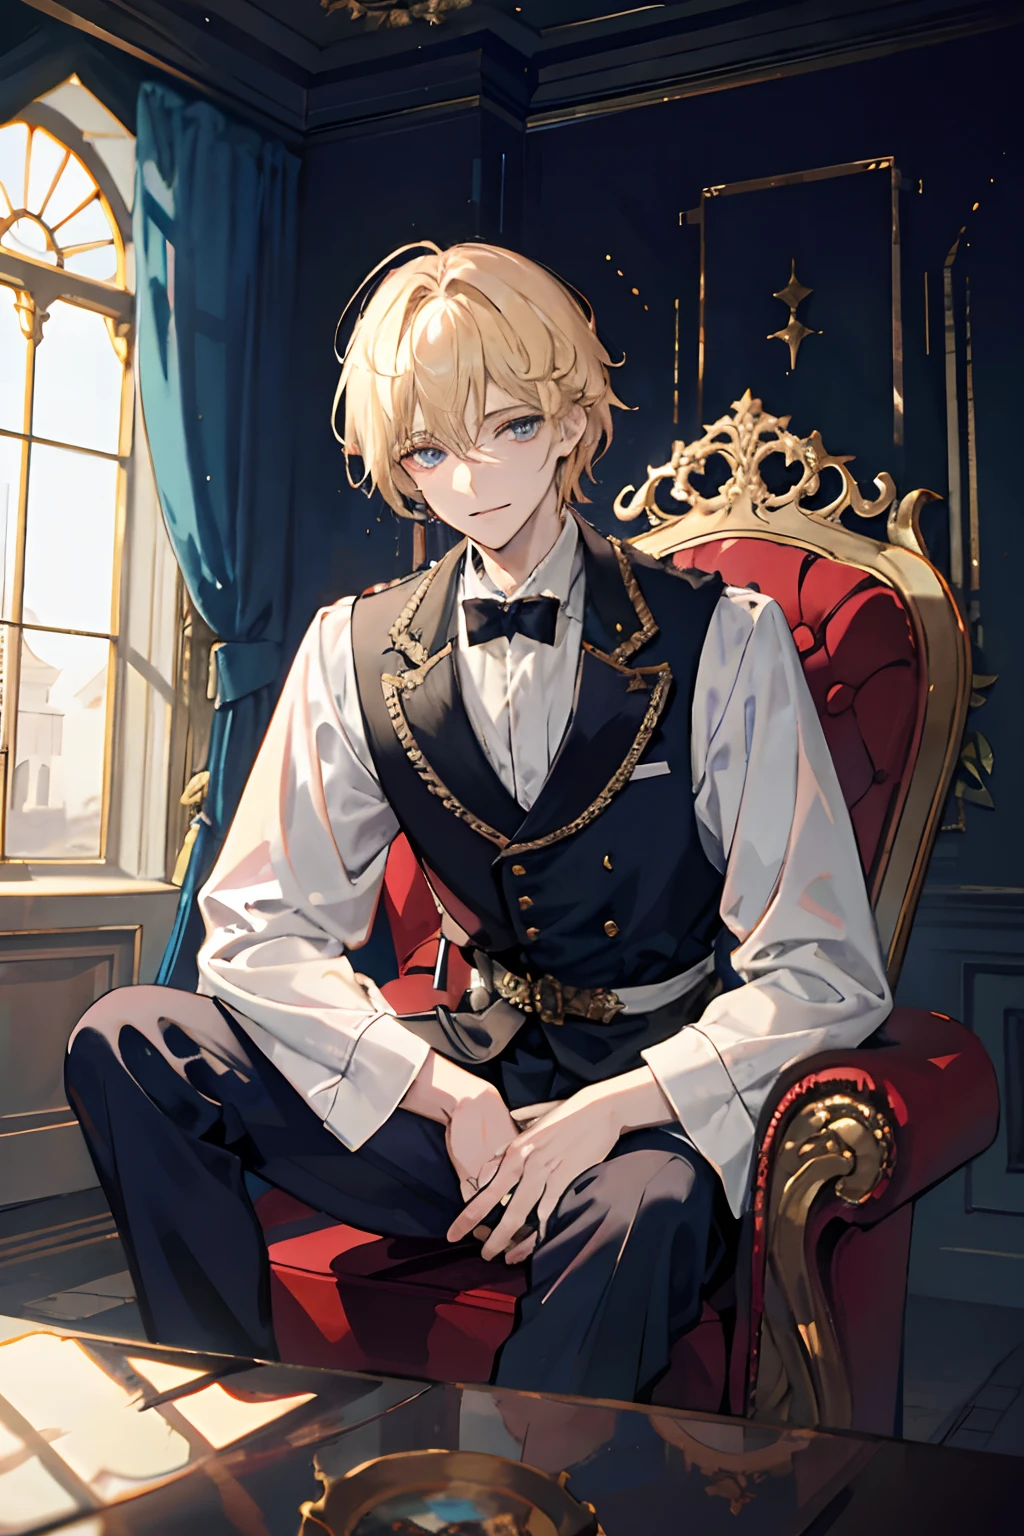 왕자는 버려진 궁전 안의 장엄한 왕좌에 앉아 있습니다., 남자아이 1명, 블론드 헤어, 파란 눈, 20 살, 차가운 얼굴, 살짝 웃었다,